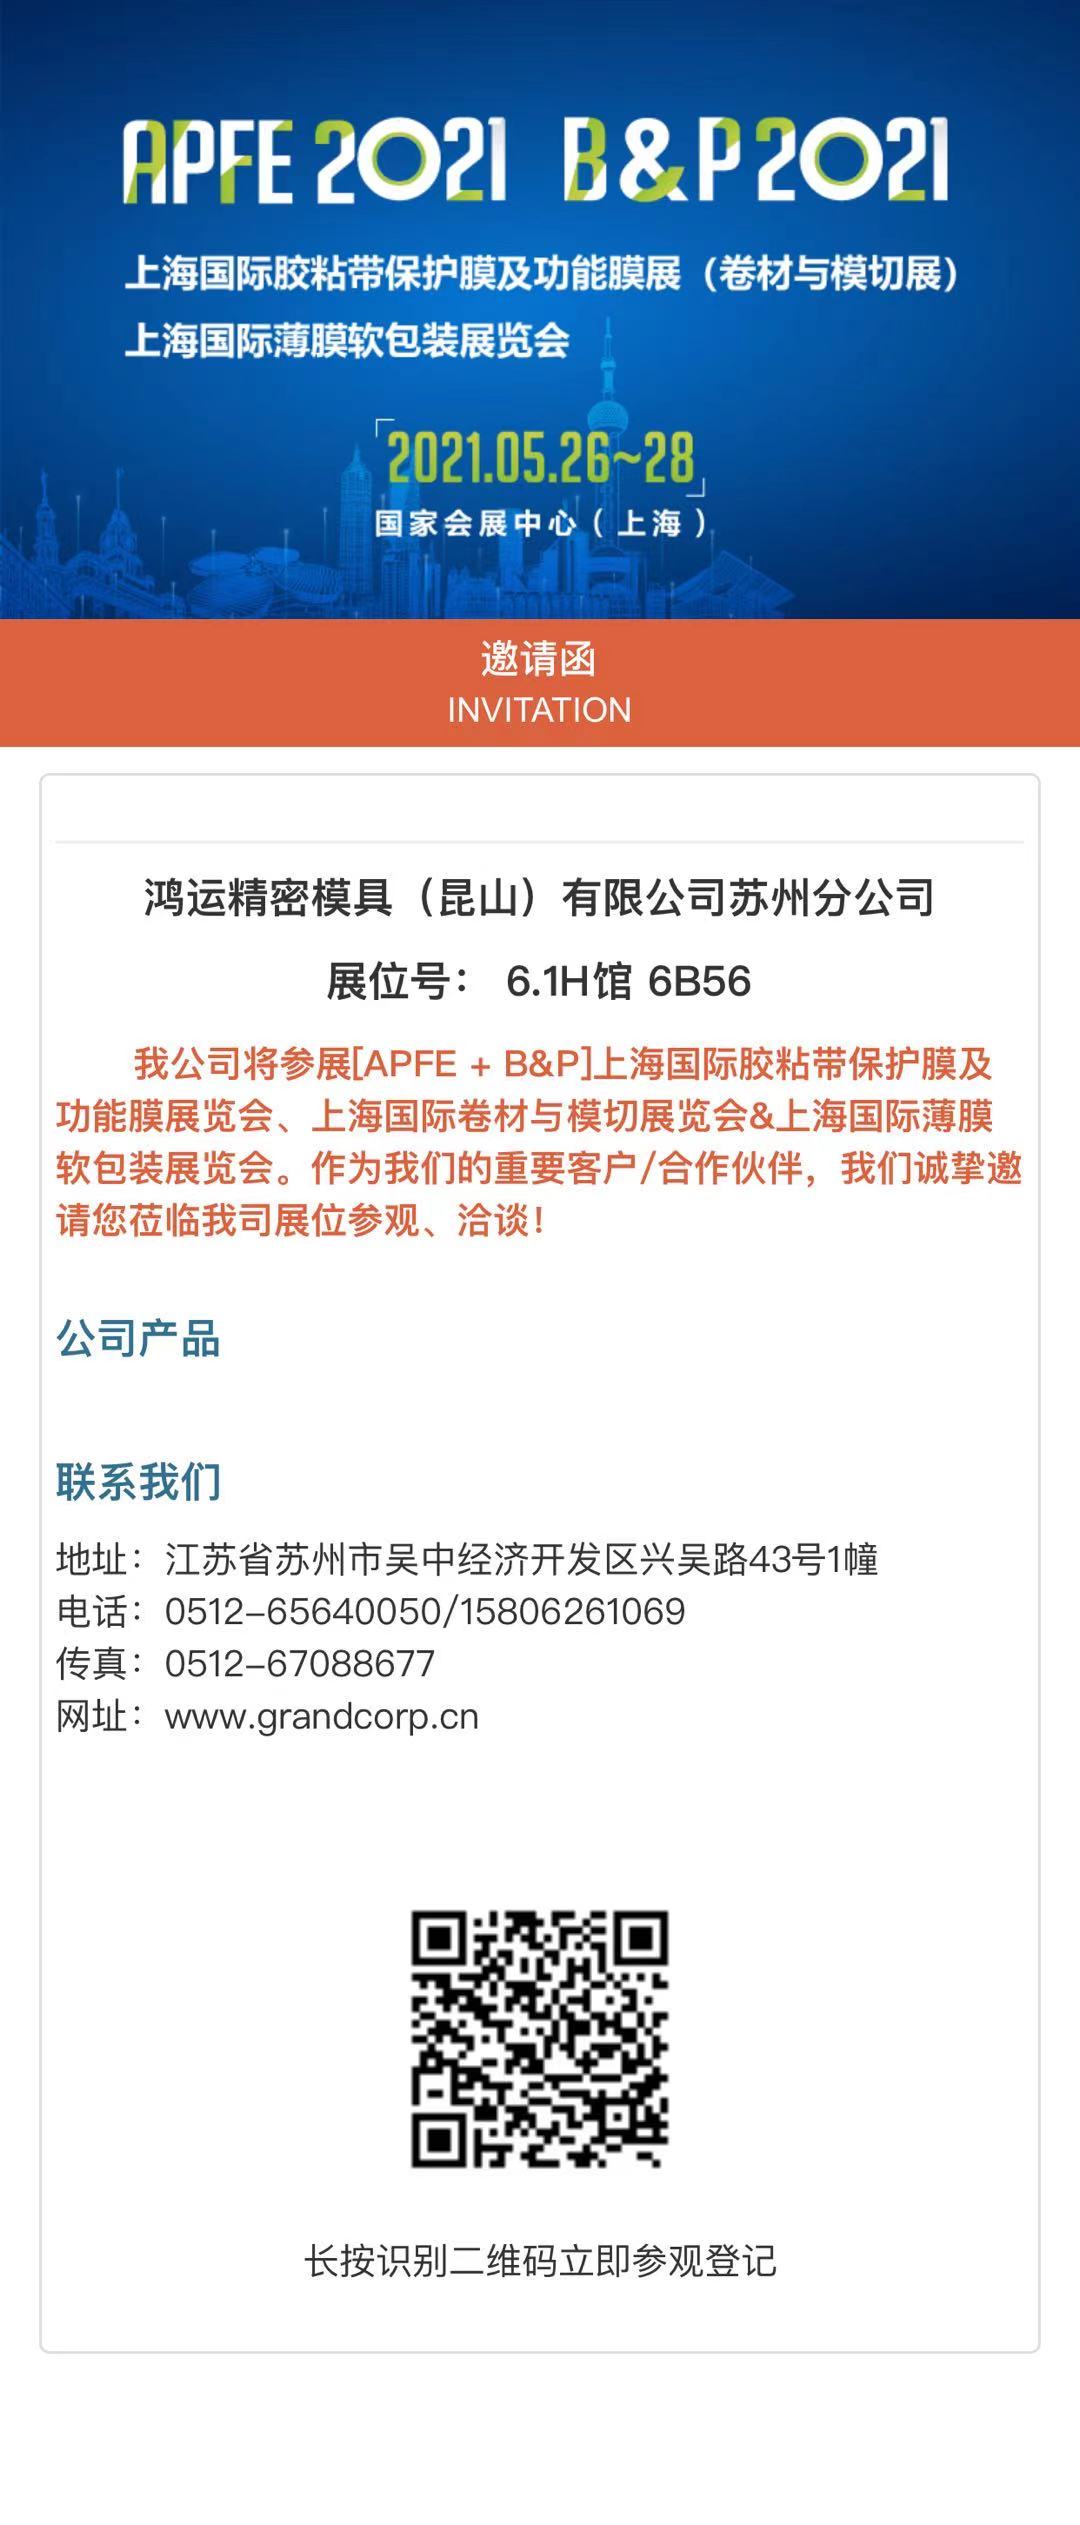 上海国际胶粘带保护膜及功能膜展览会、上海国际卷材与模切展览会